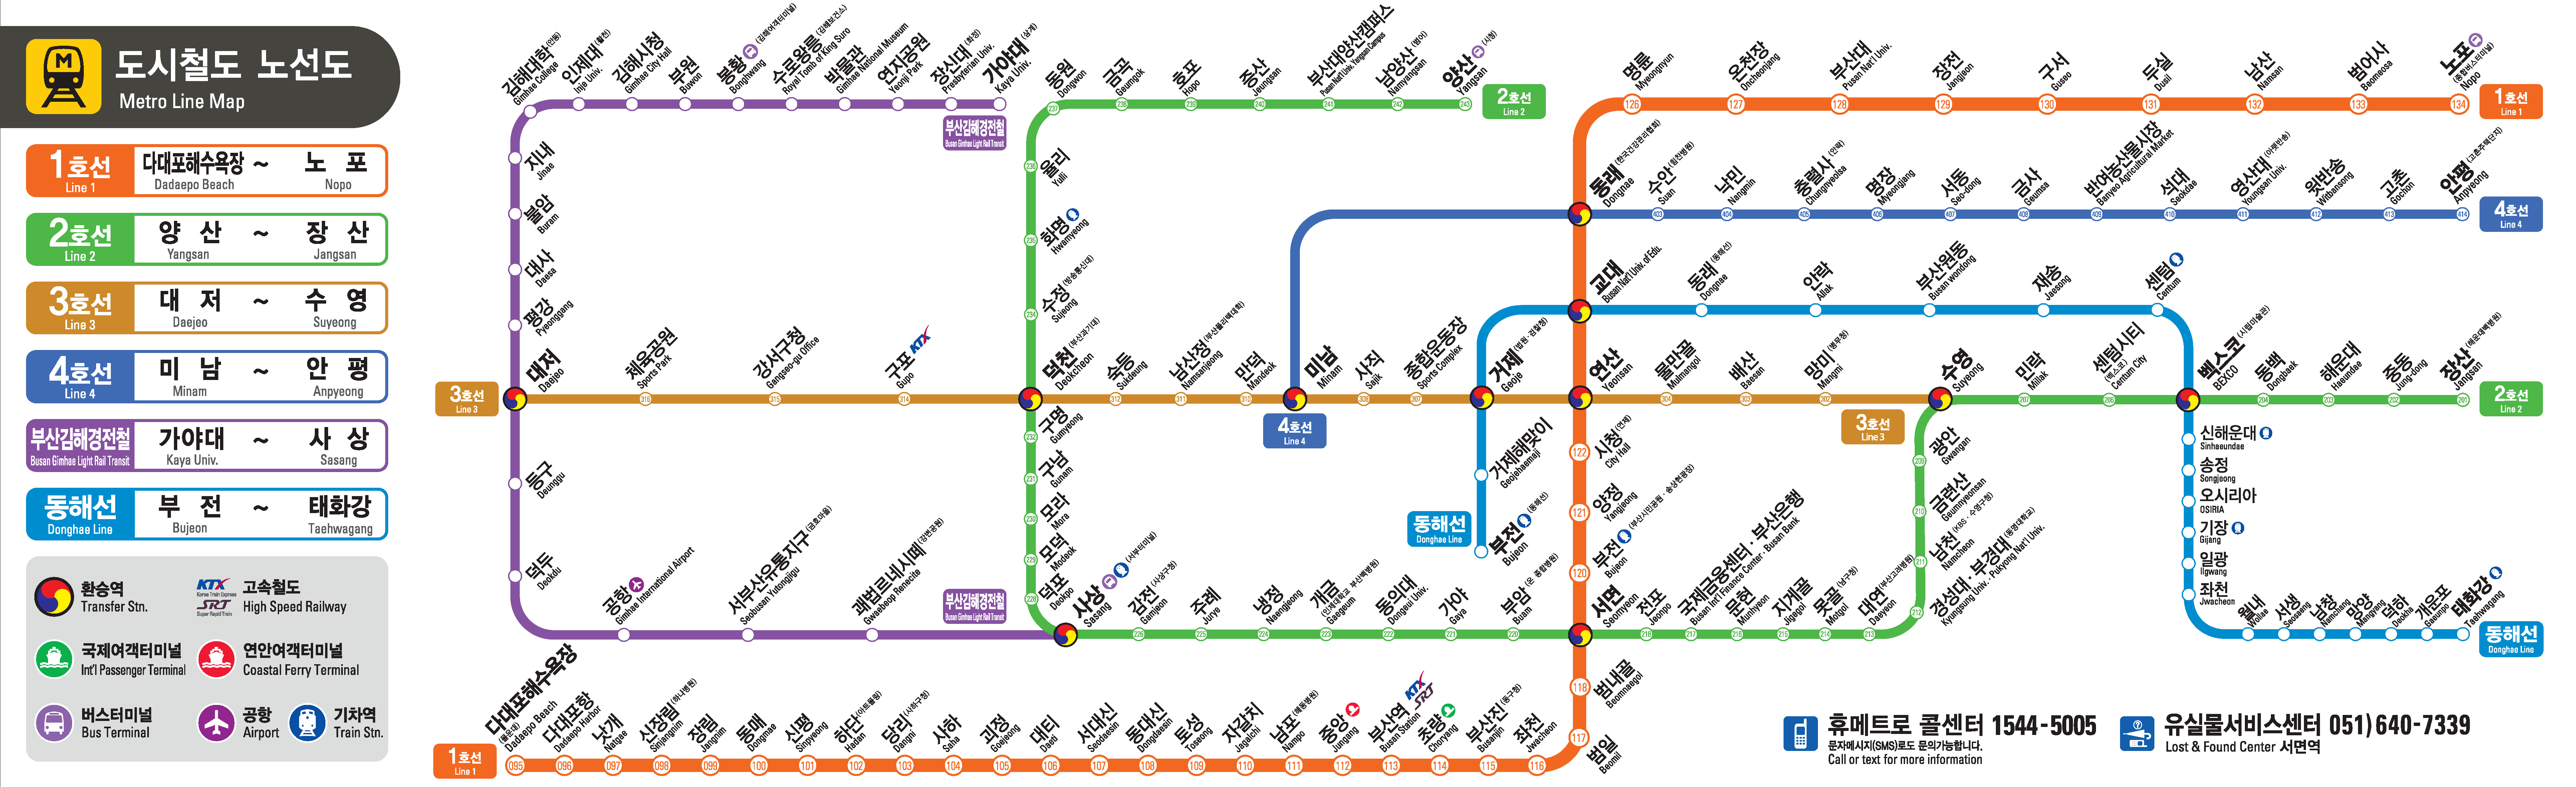 부산도시철도노선도-해운대구 내의 도시철도역은 센텀시티, 시립미술관, 해운대, 중동, 동백, 장산역이 있습니다.